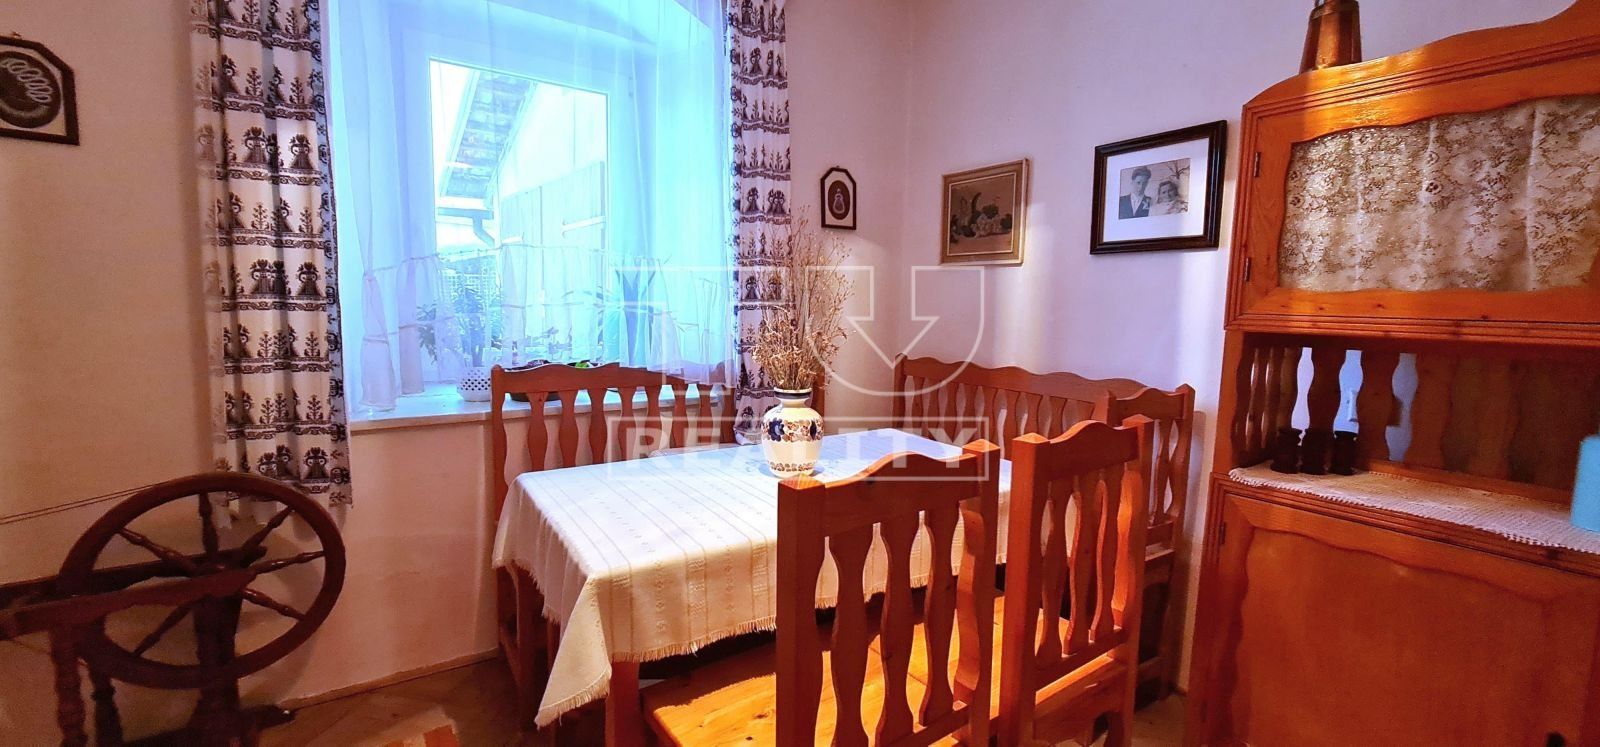 TUreality ponúka: Na predaj veľký dom v historickom meste Kremnica s rôznymi možnosťami využitia